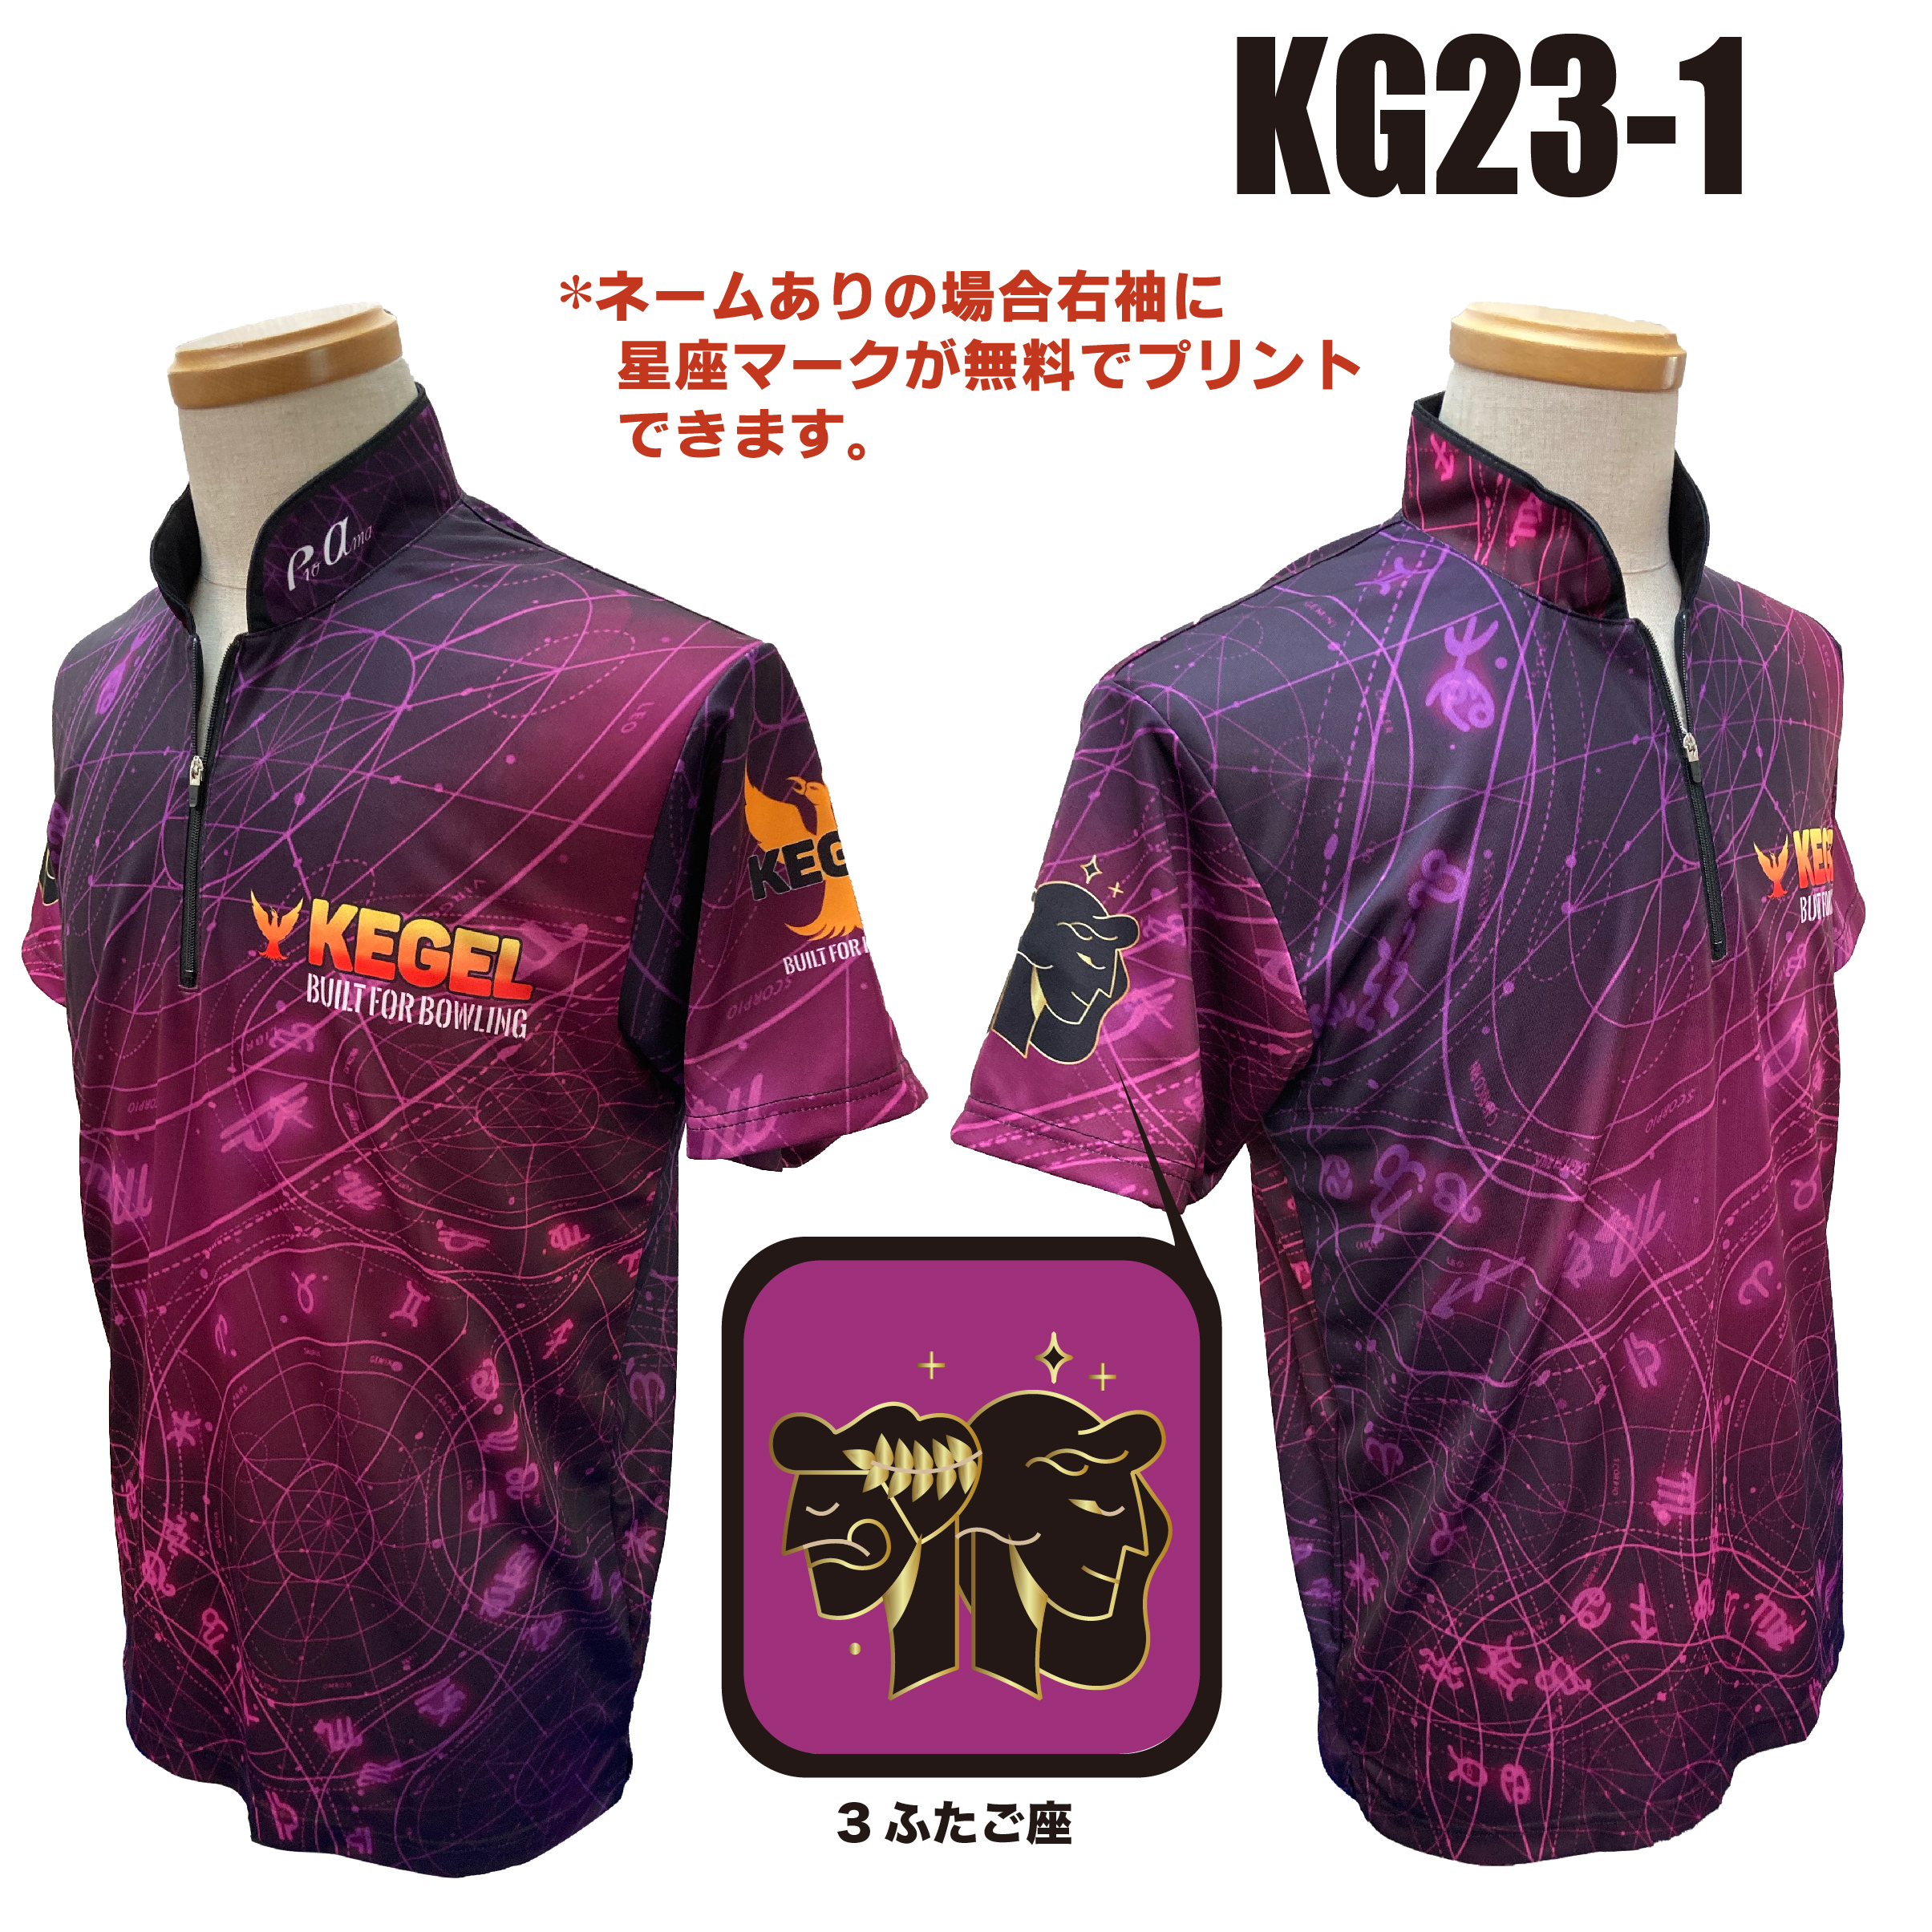 KEGEL KG23-1(受注生産)